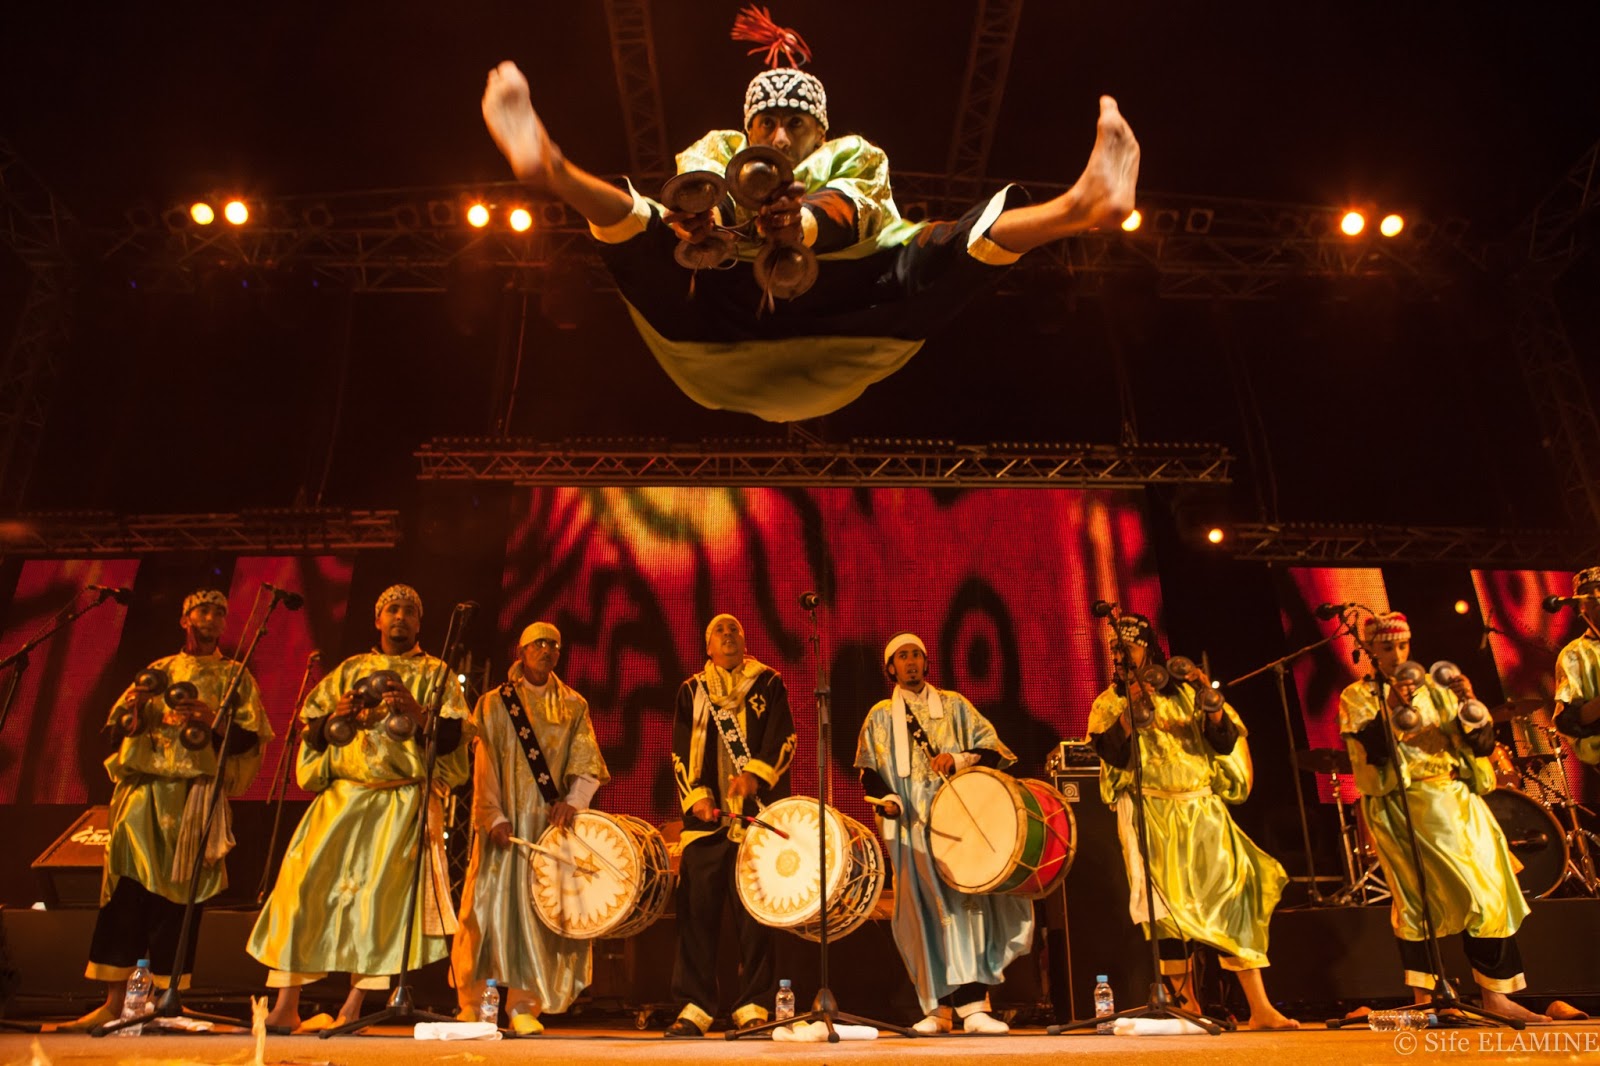 Nationales Festival der Volkskunst in Marrakech